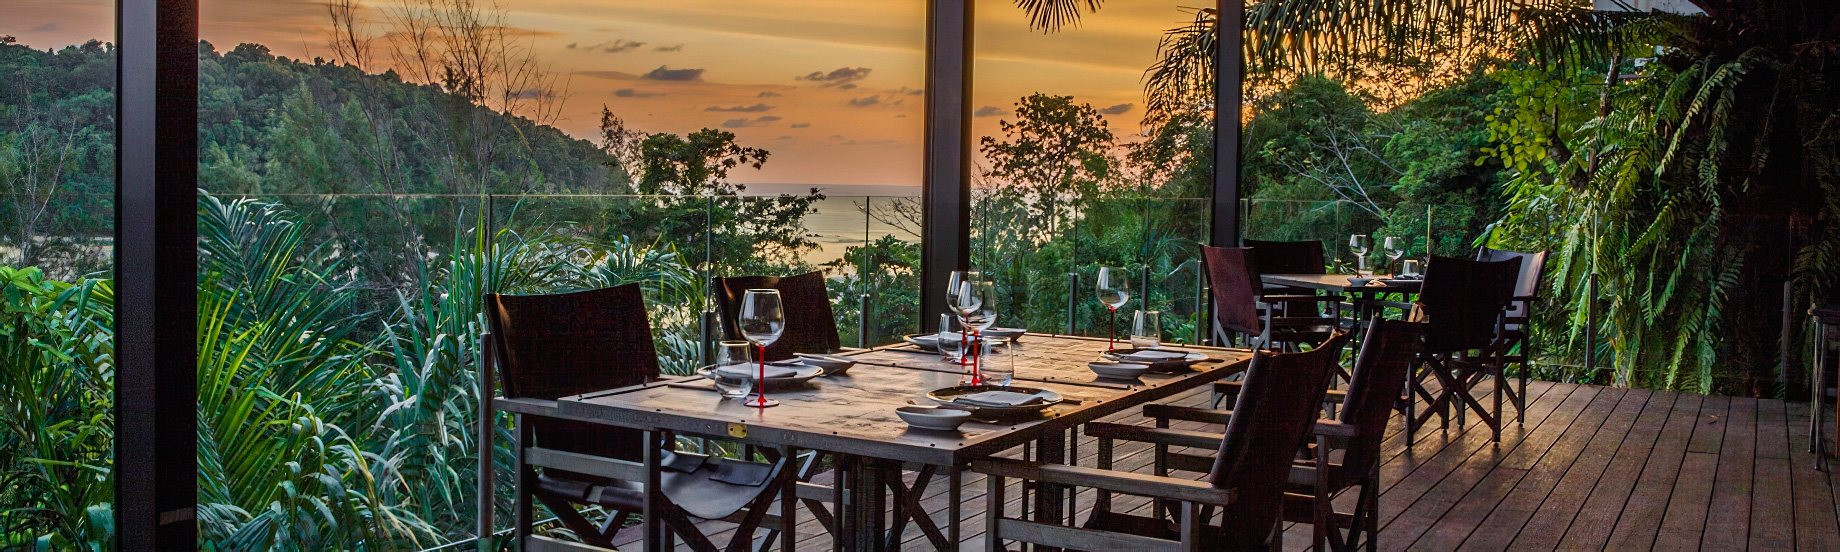 Anantara Layan Phuket Resort & Residences – Thailand – Age Restaurant